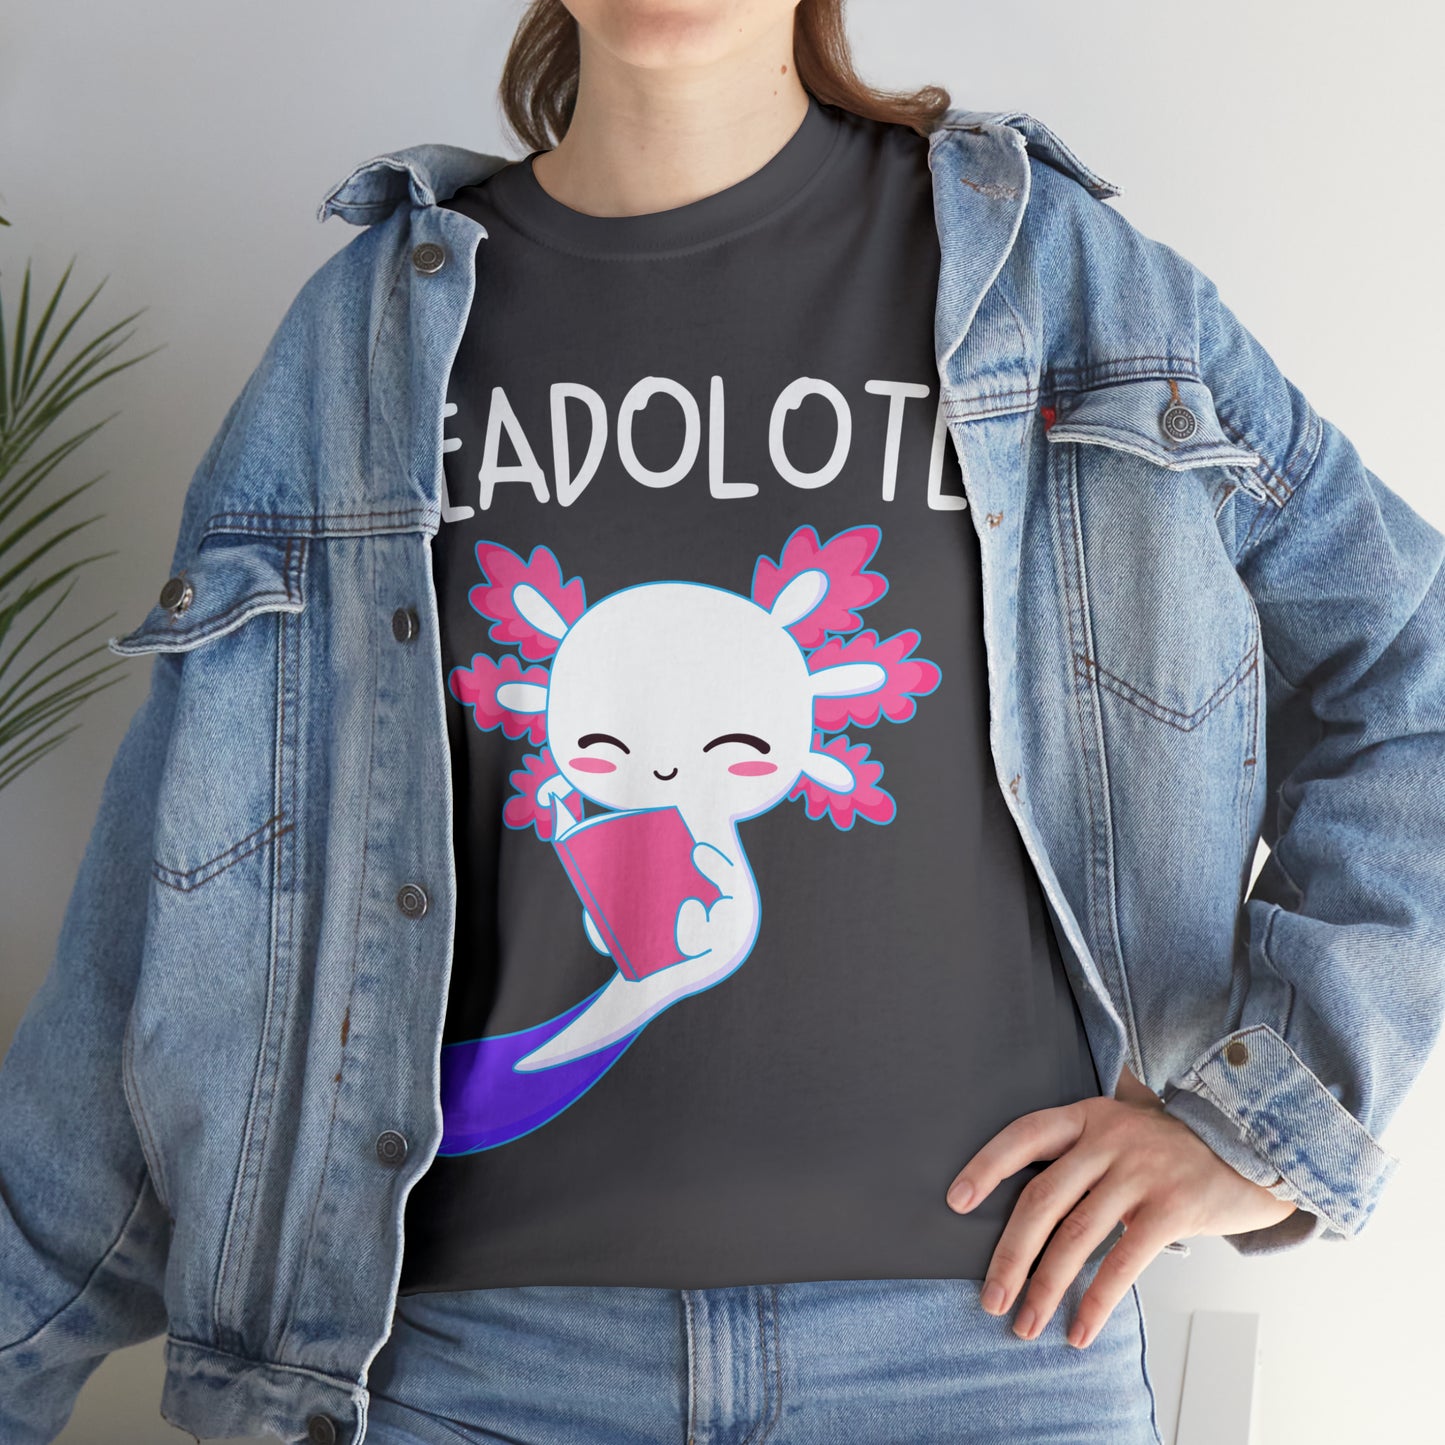 Readalotl | Cute Axolotl | Kawaii Otaku